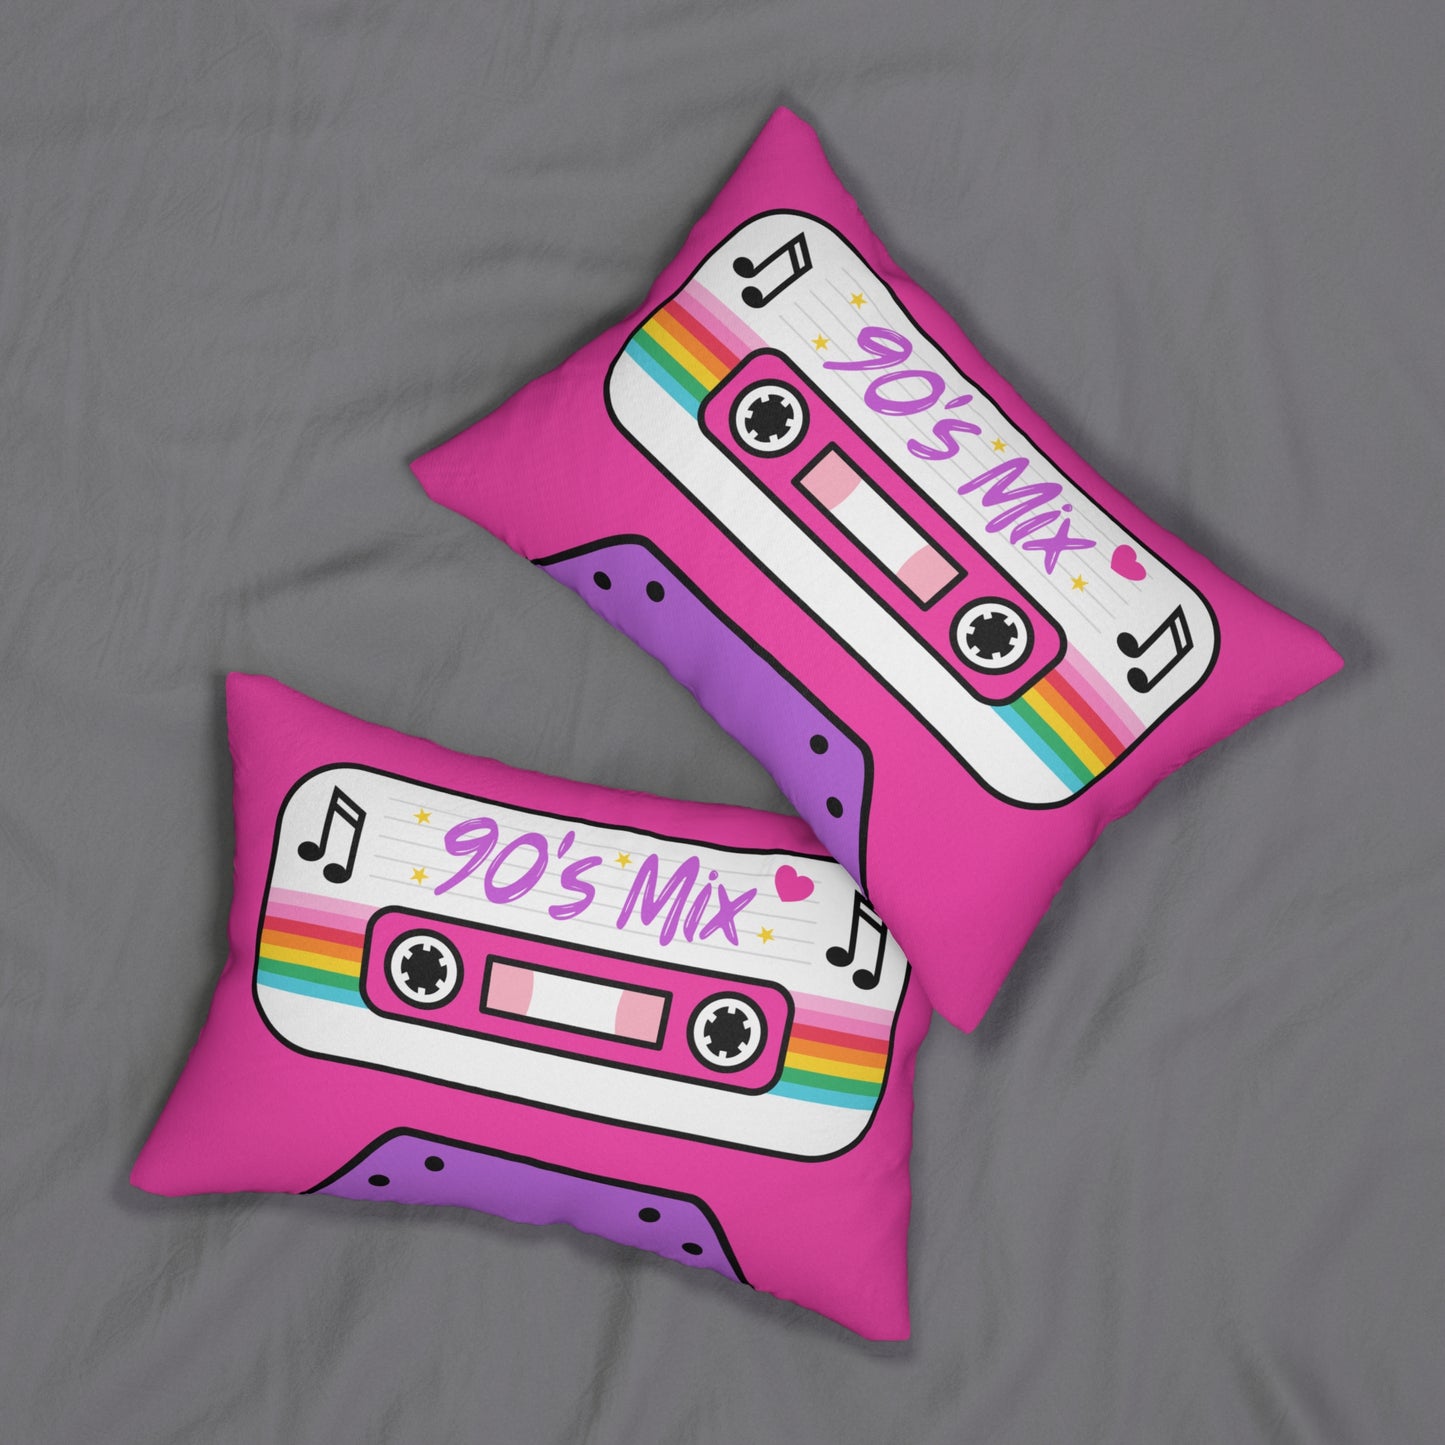 Mix Tape Pillow - 90's Mix